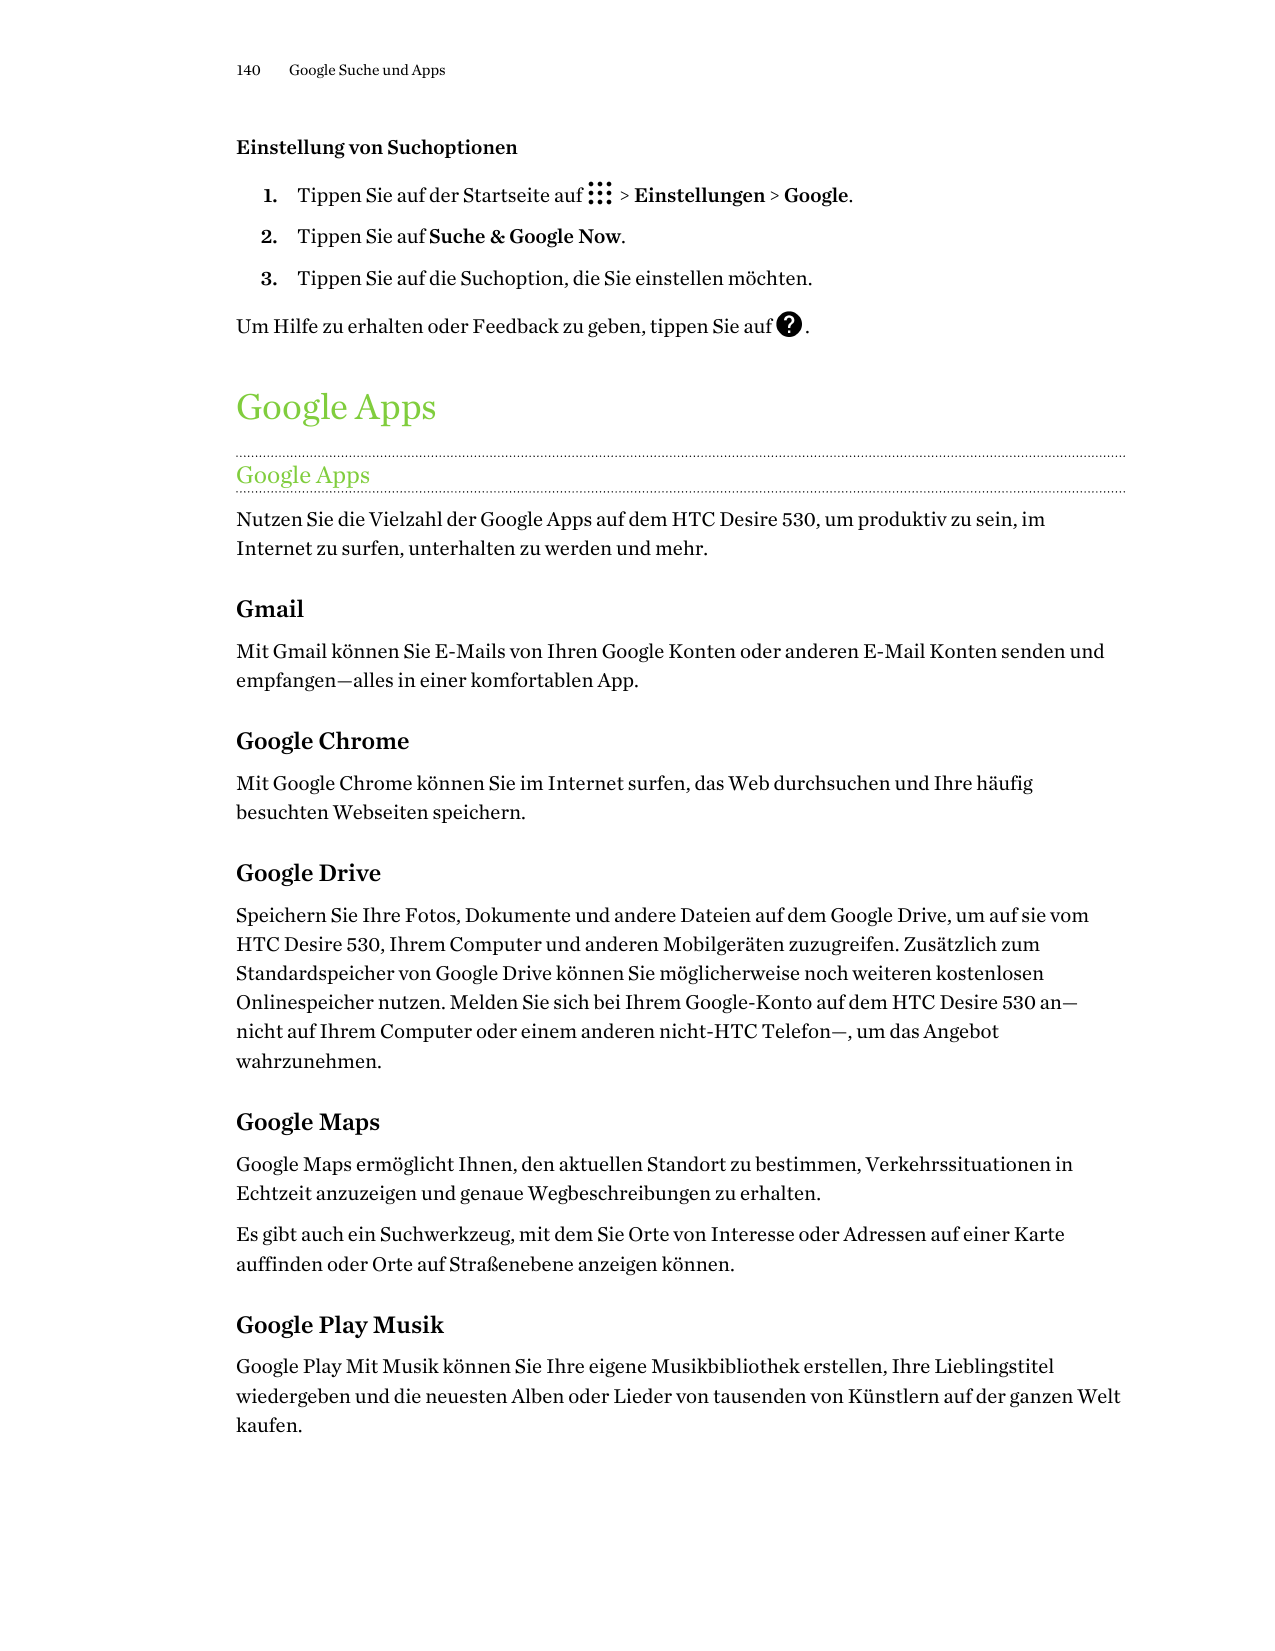 140Google Suche und AppsEinstellung von Suchoptionen1. Tippen Sie auf der Startseite auf> Einstellungen > Google.2. Tippen Sie a